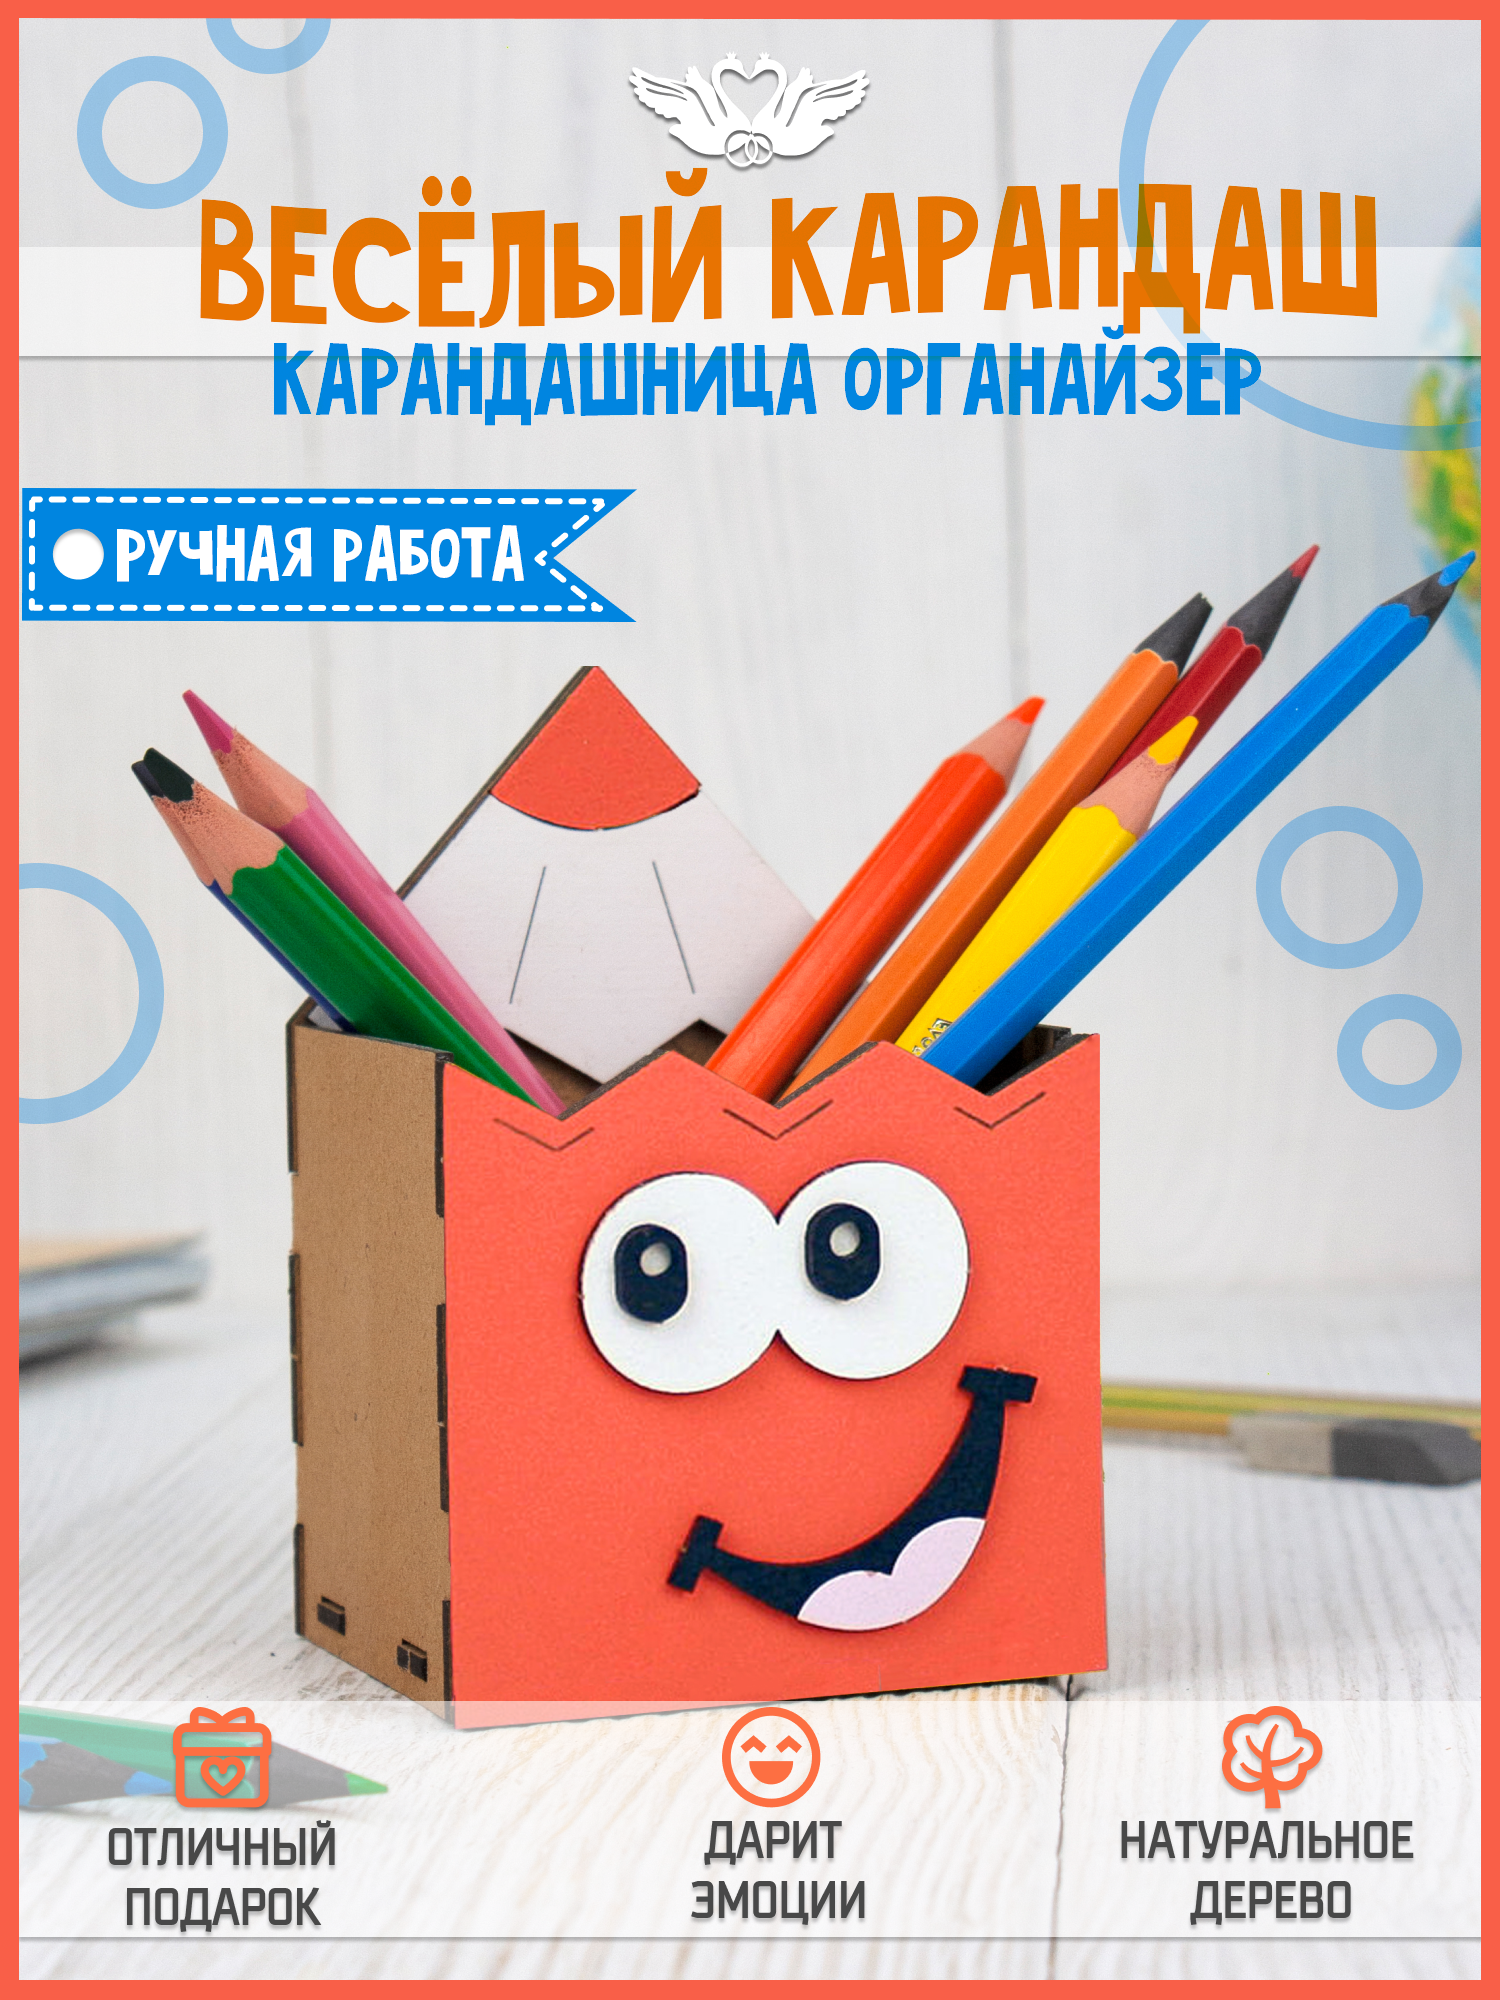 Карандашница детская деревянная (8*7*12см) оранжевый. Подарок на выпускной из детского сада. ТМ "Канышевы"